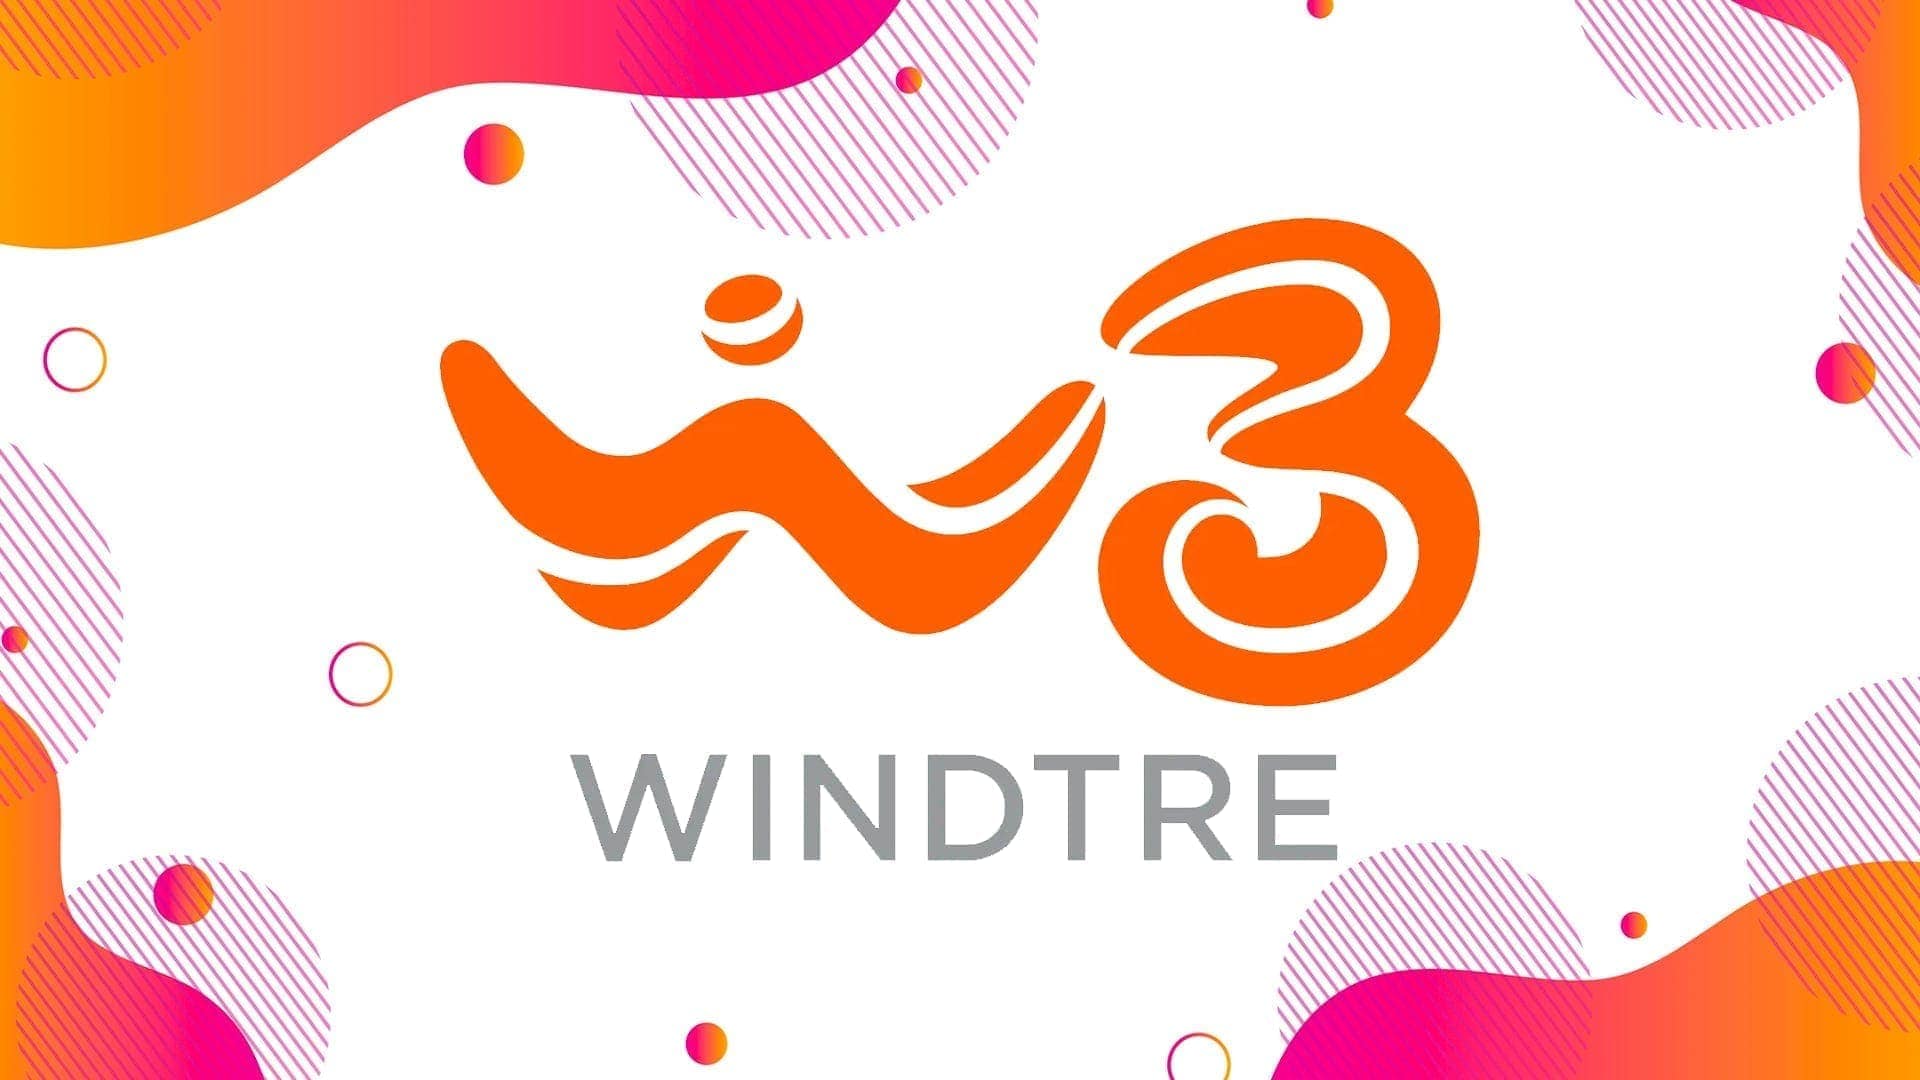 WindTre rinnova le offerte MIA Super Fibra: scopriamo le novità per le linee FTTC e FTTH